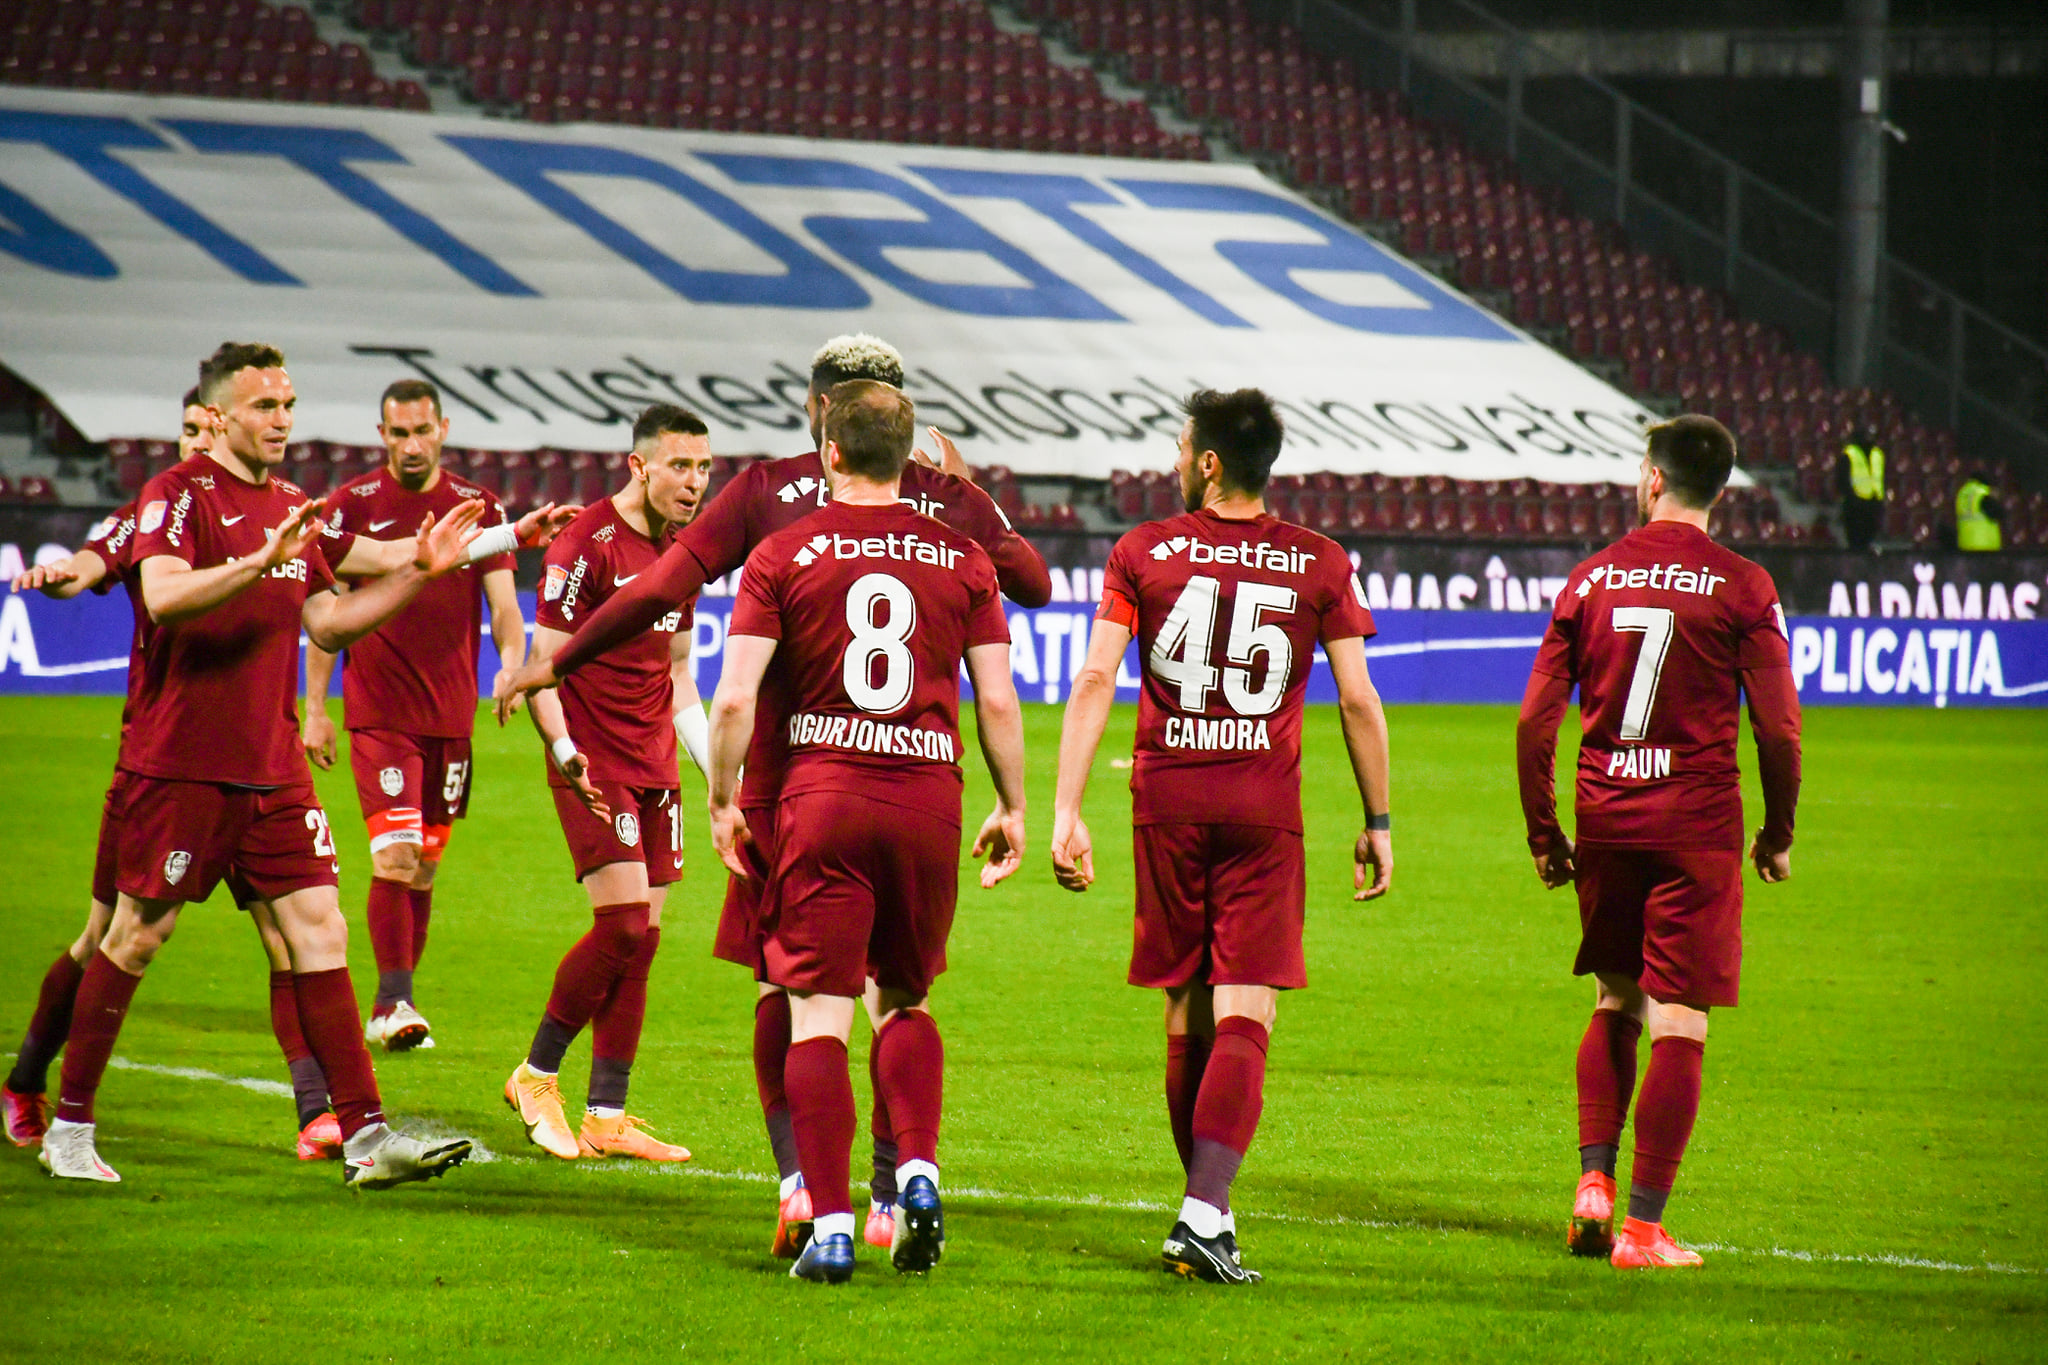 Început cu dreptul în play-off pentru CFR Cluj. Victorie incontestabilă în fața Academicii Clinceni